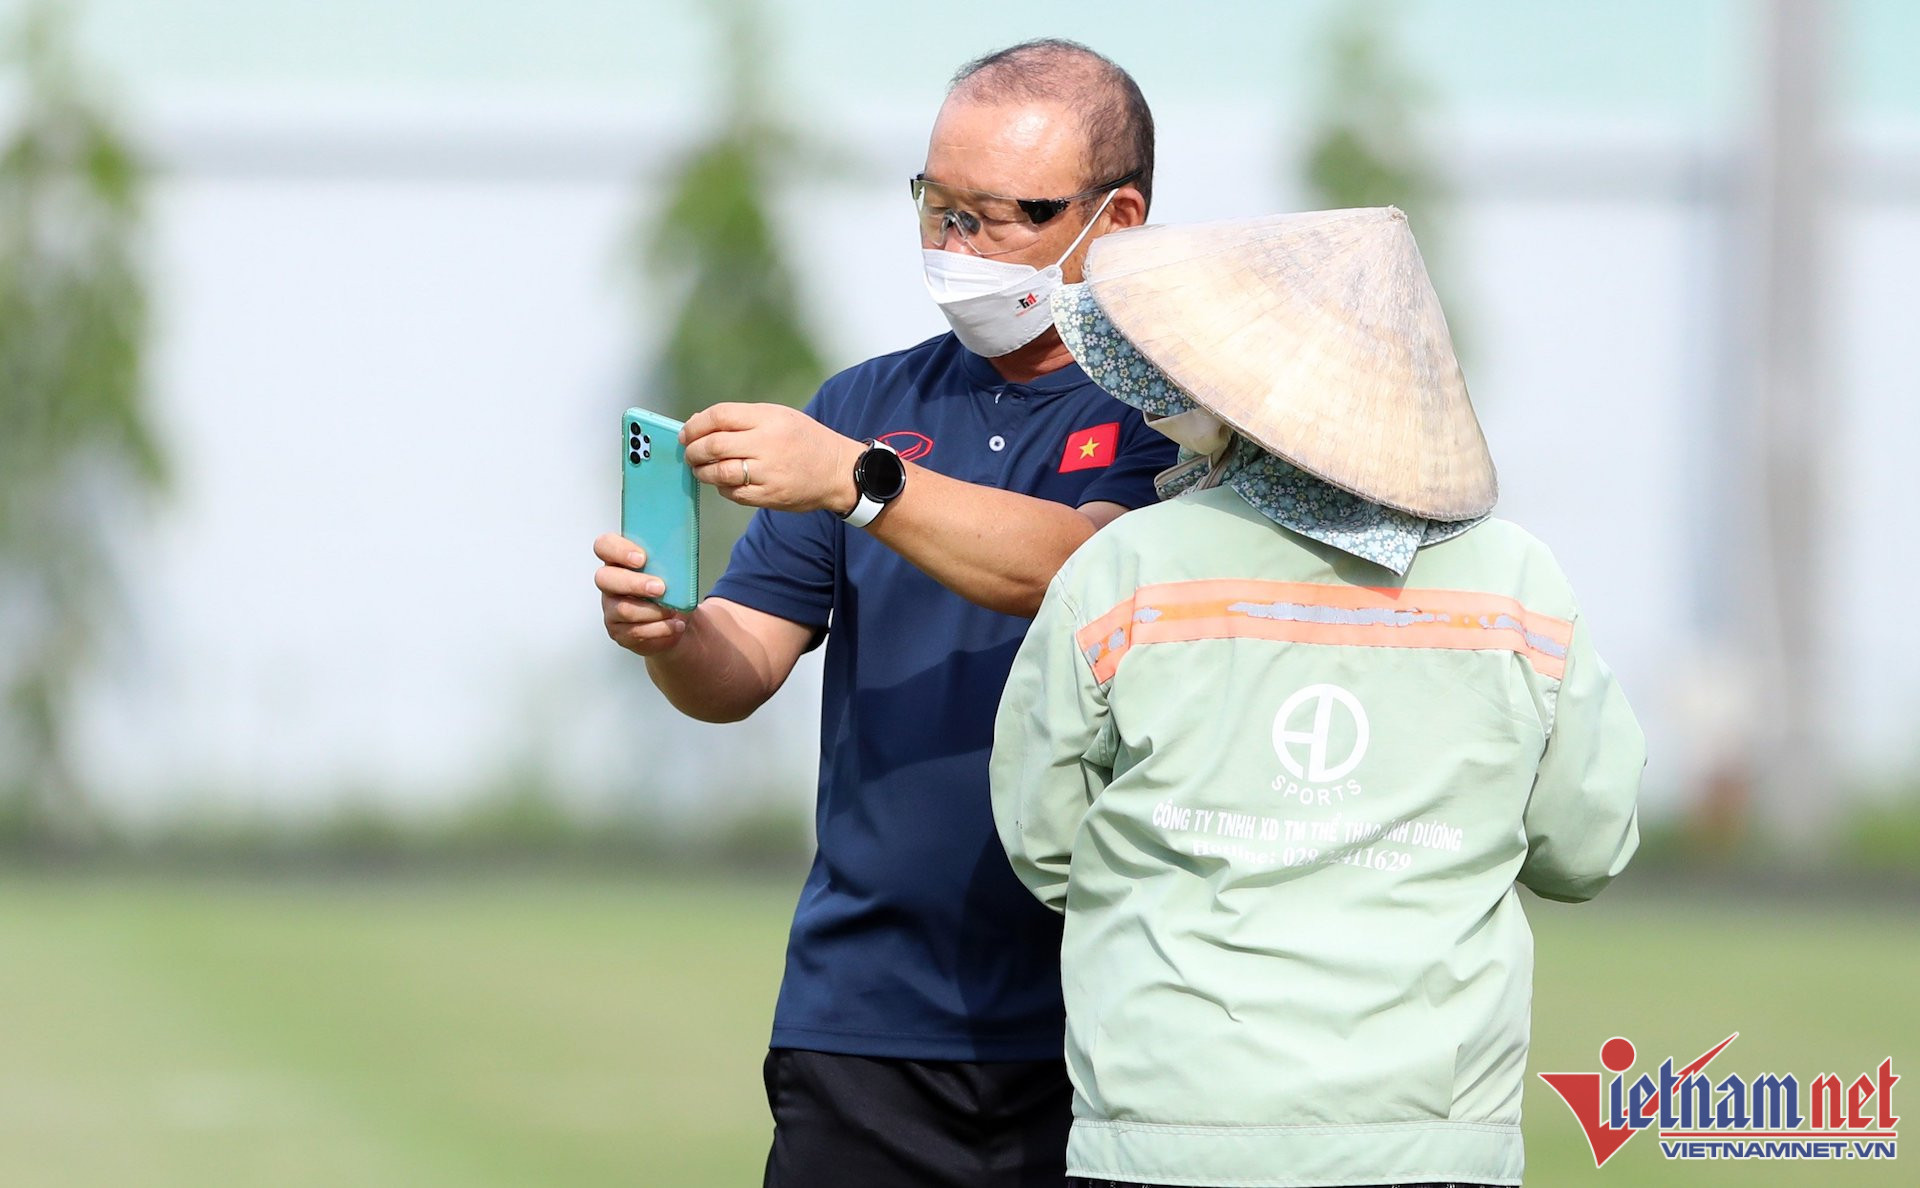 HLV Park Hang Seo dù khá âu lo cho việc có thể vắng Quang Hải tại AFF Cup 2022 nhưng vẫn vui vẻ chụp hình cùng một lao công dọn vệ sinh sân tập tuyển Việt Nam